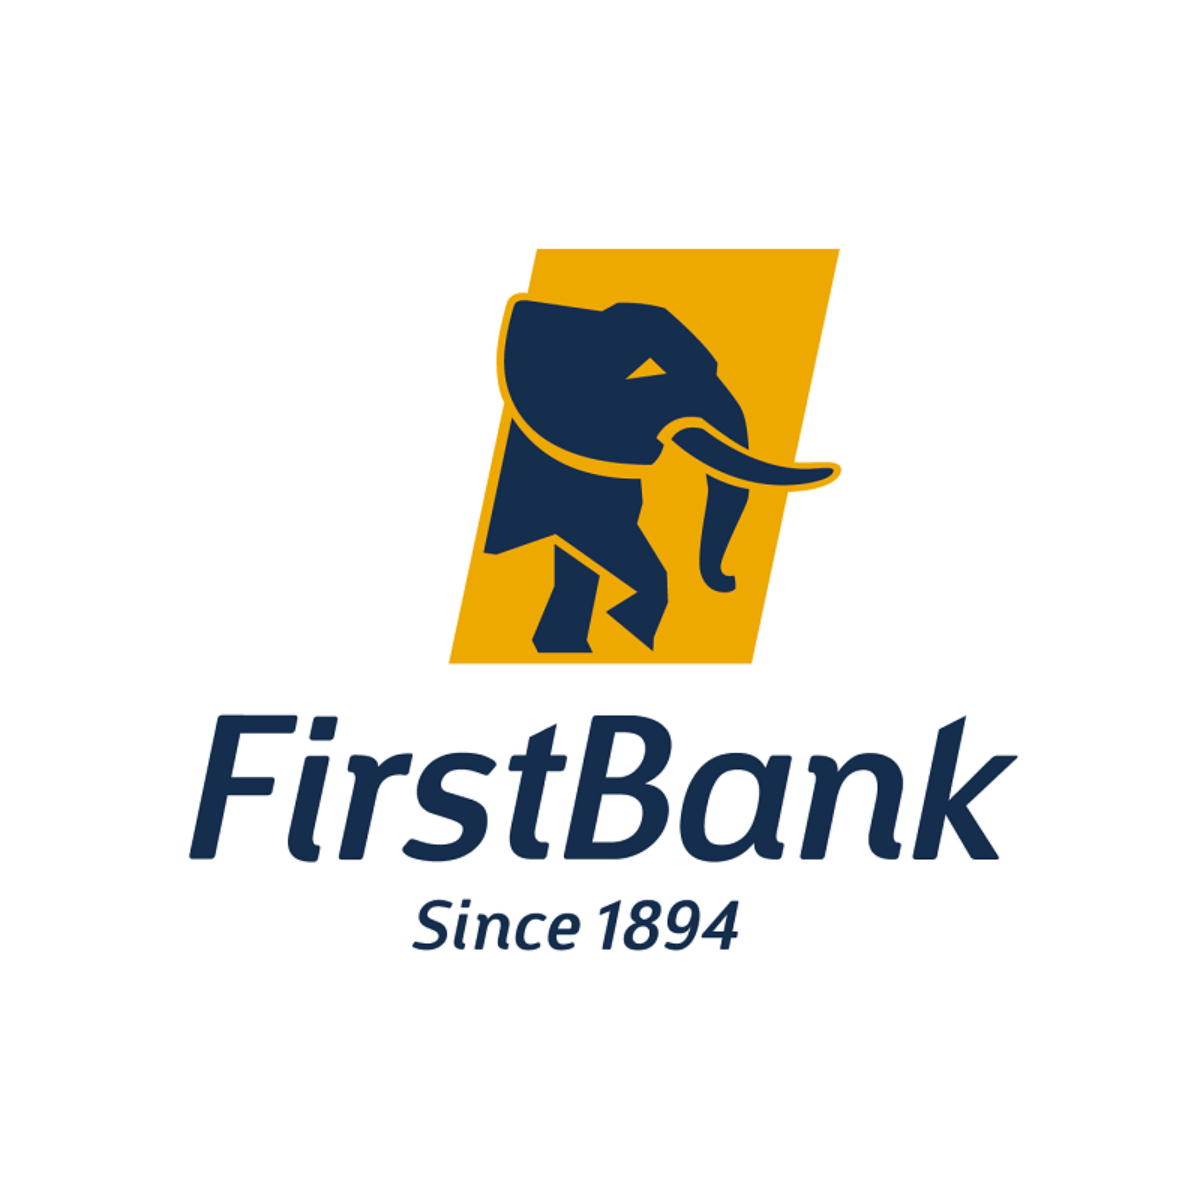 1 first bank. First Bank. First Bank of Nigeria. 1 Bank logo. First Bank Romania logo.